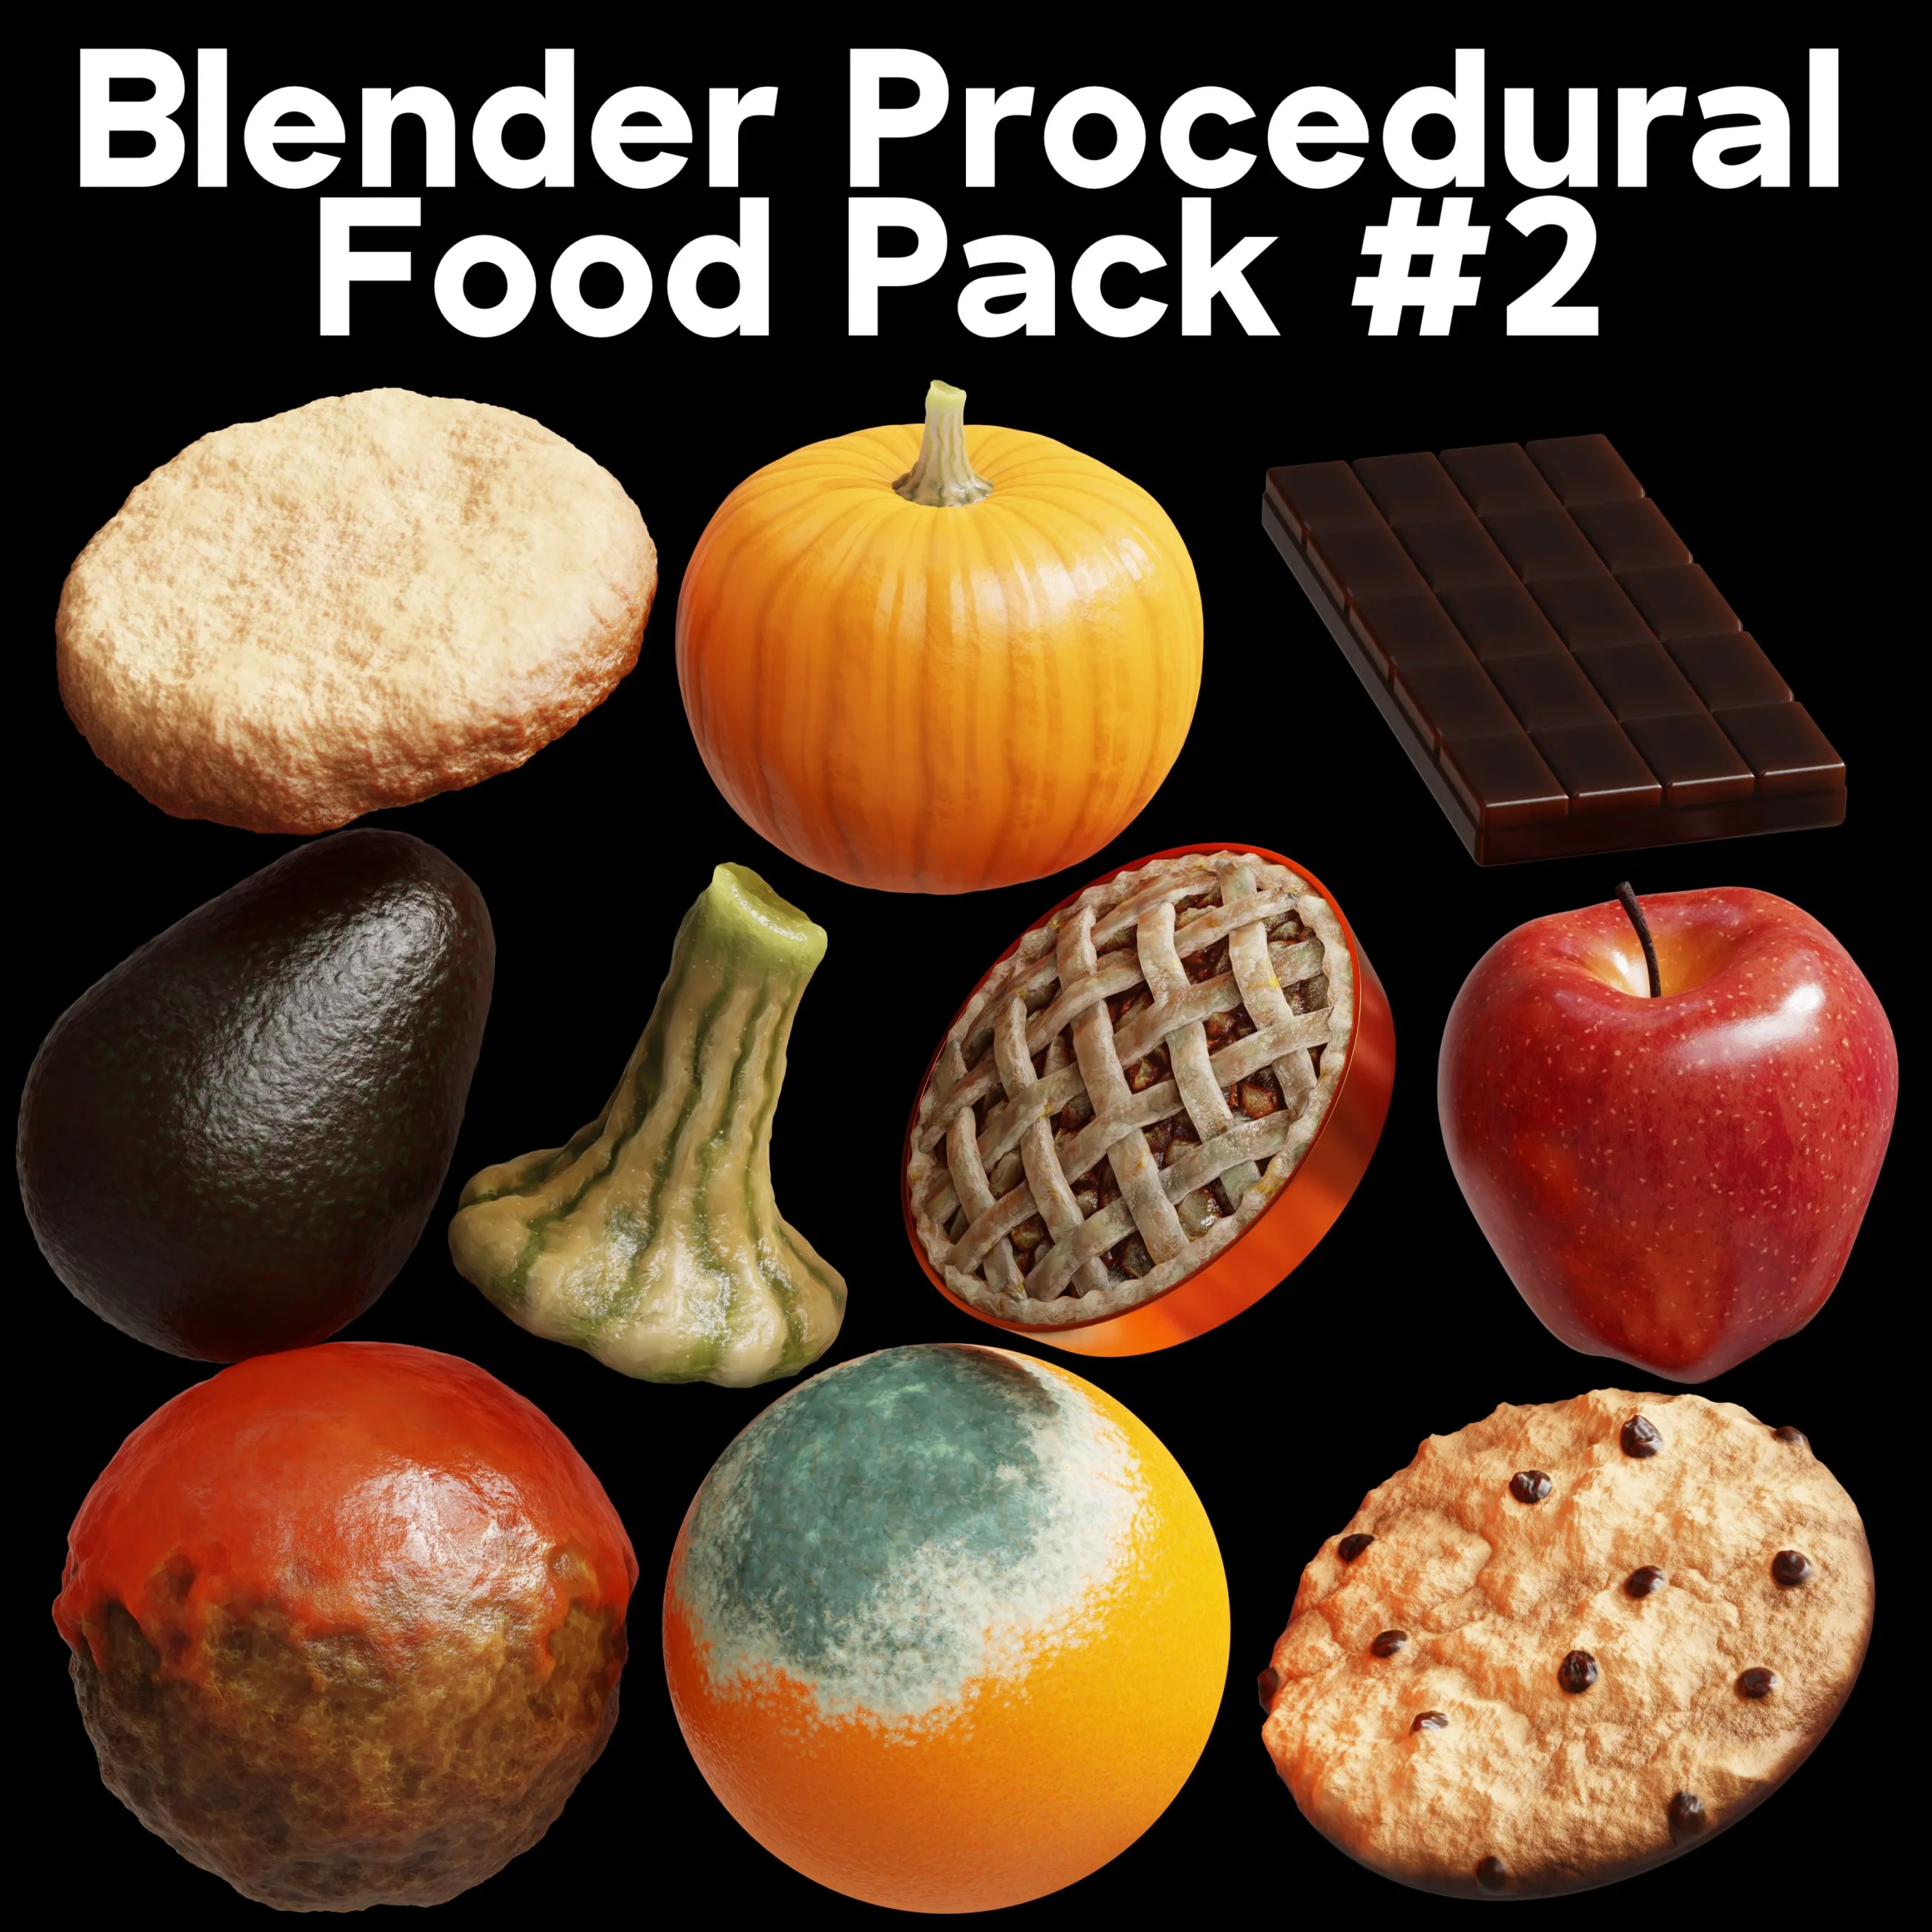 Blender Procedural Food Pack #2